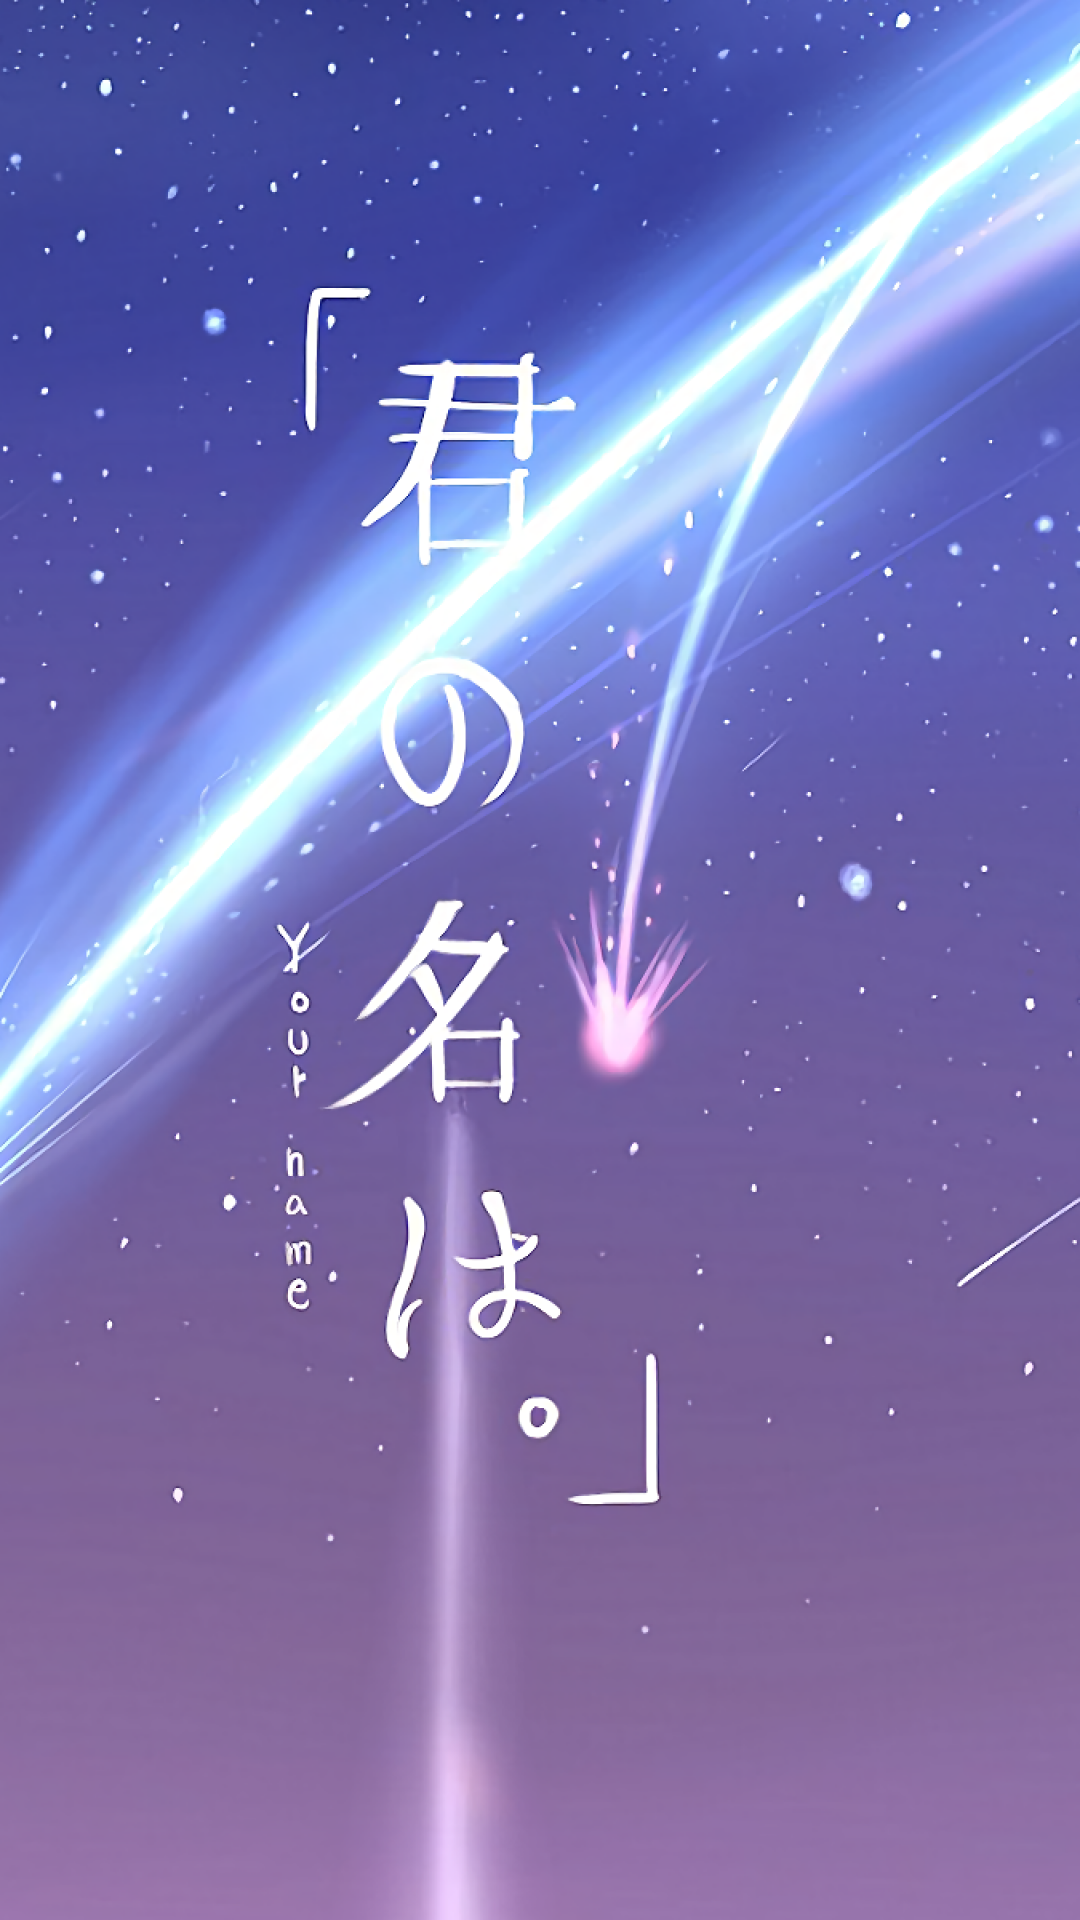 Kimi No Na Wa Stars Night Scenic Sky Wallpaper Wpt4607689 Kimi